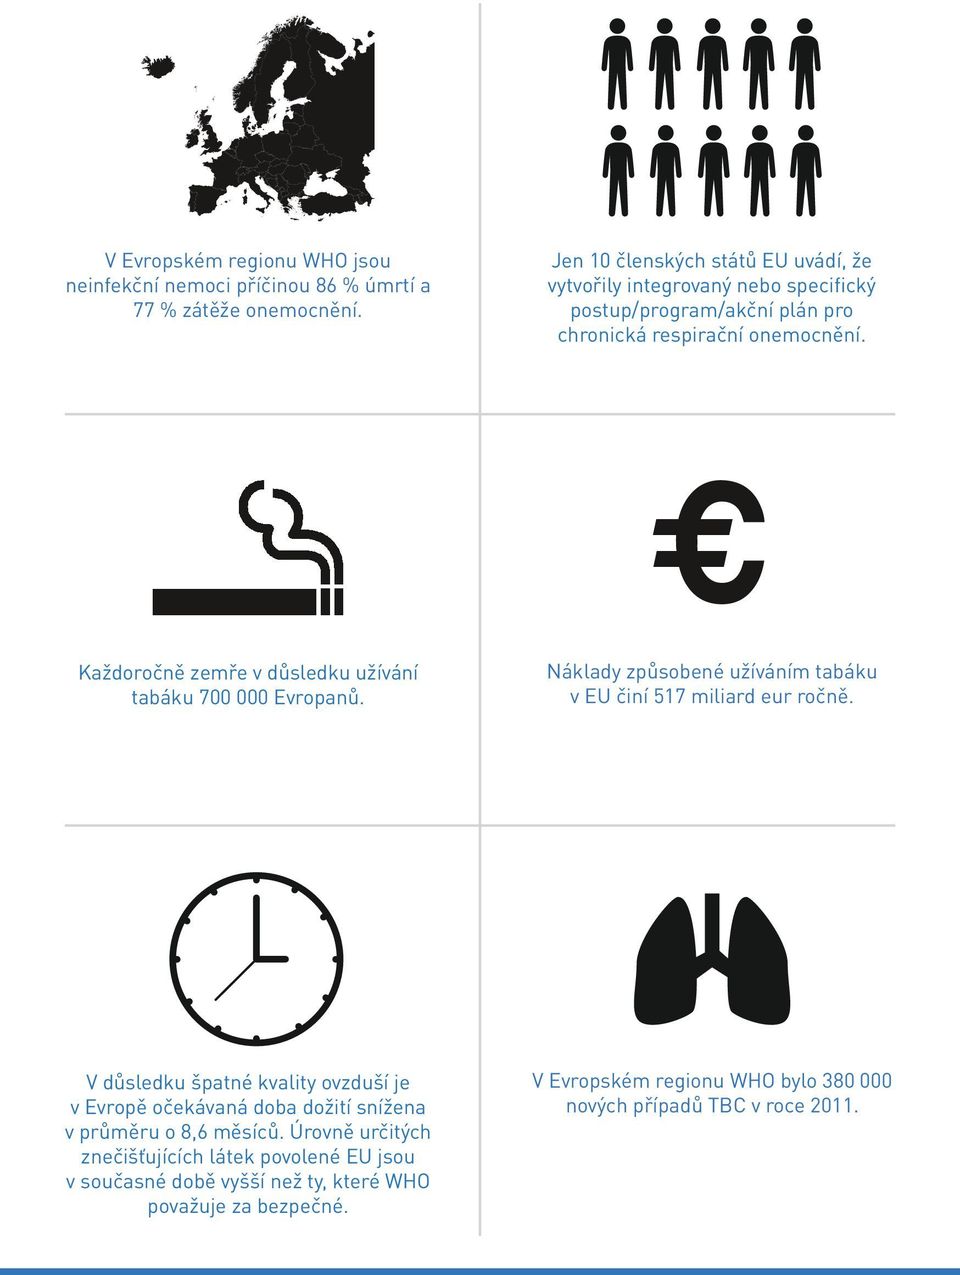 Každoročně zemře v důsledku užívání tabáku 700 000 Evropanů. Náklady způsobené užíváním tabáku v EU činí 517 miliard eur ročně.